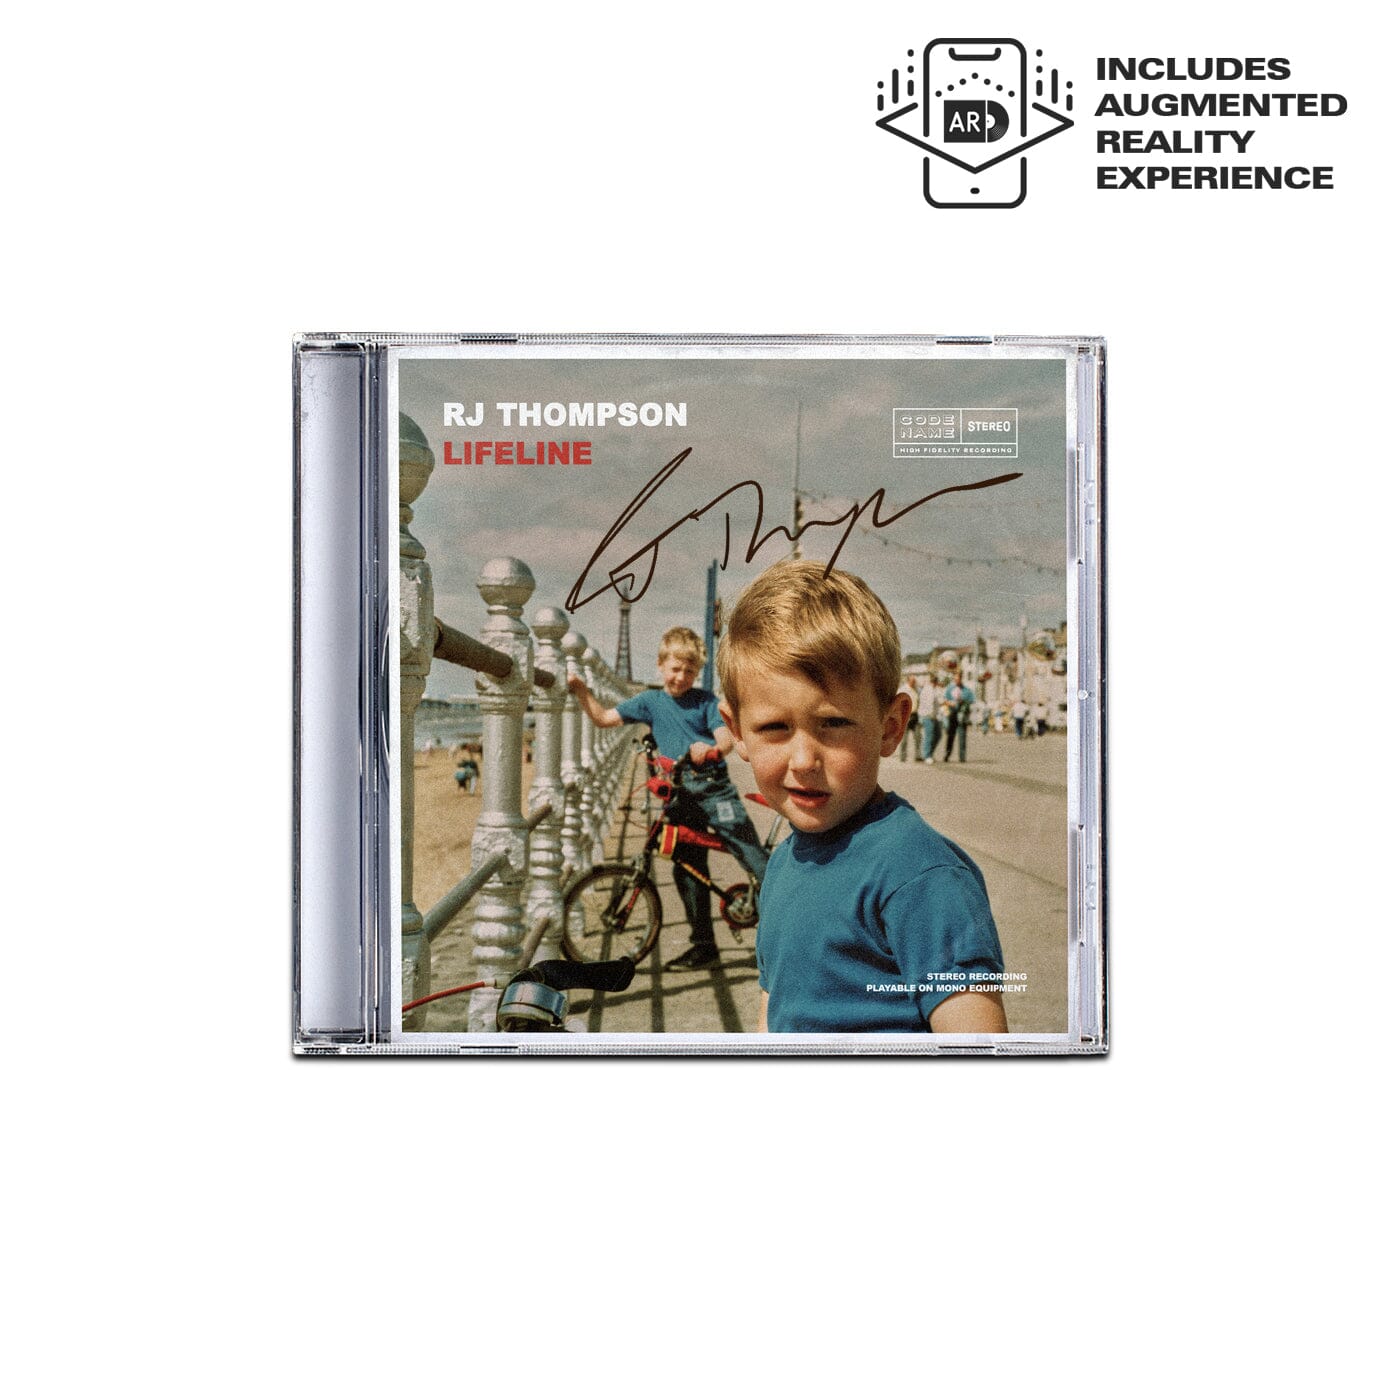 Lifeline - CD | RJ Thompson | Official Website & Store